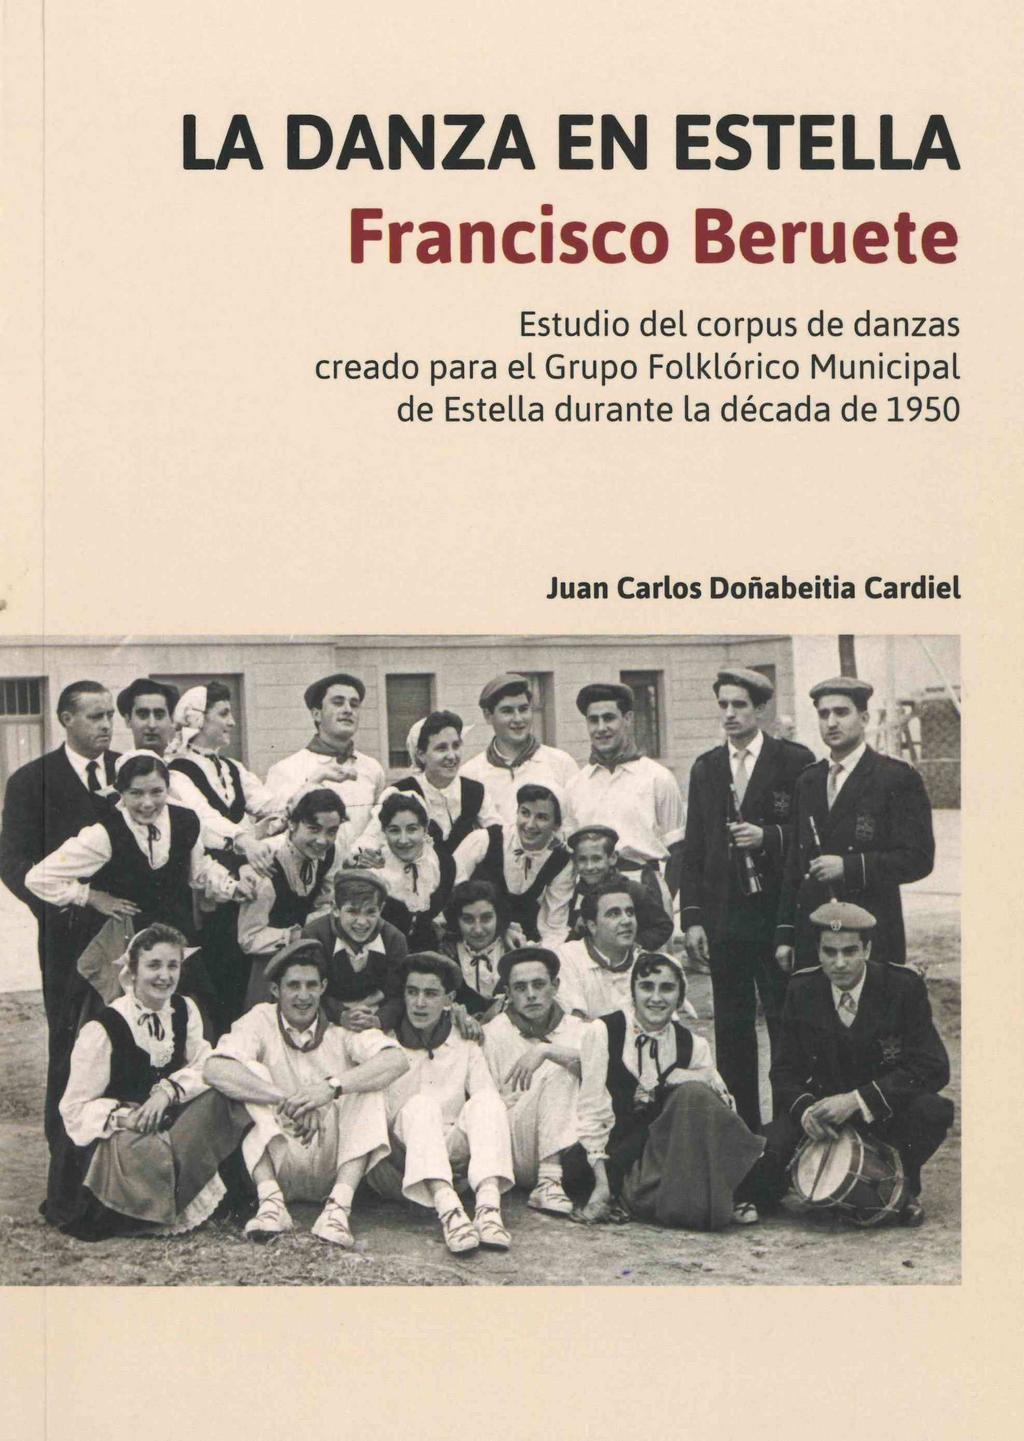 NOVEDADES EDITORIALES Y NUEVAS ADQUISICIONES Libros modernos (editados a partir de 1958) La danza en Estella : Francisco Beruete : estudio del corpus